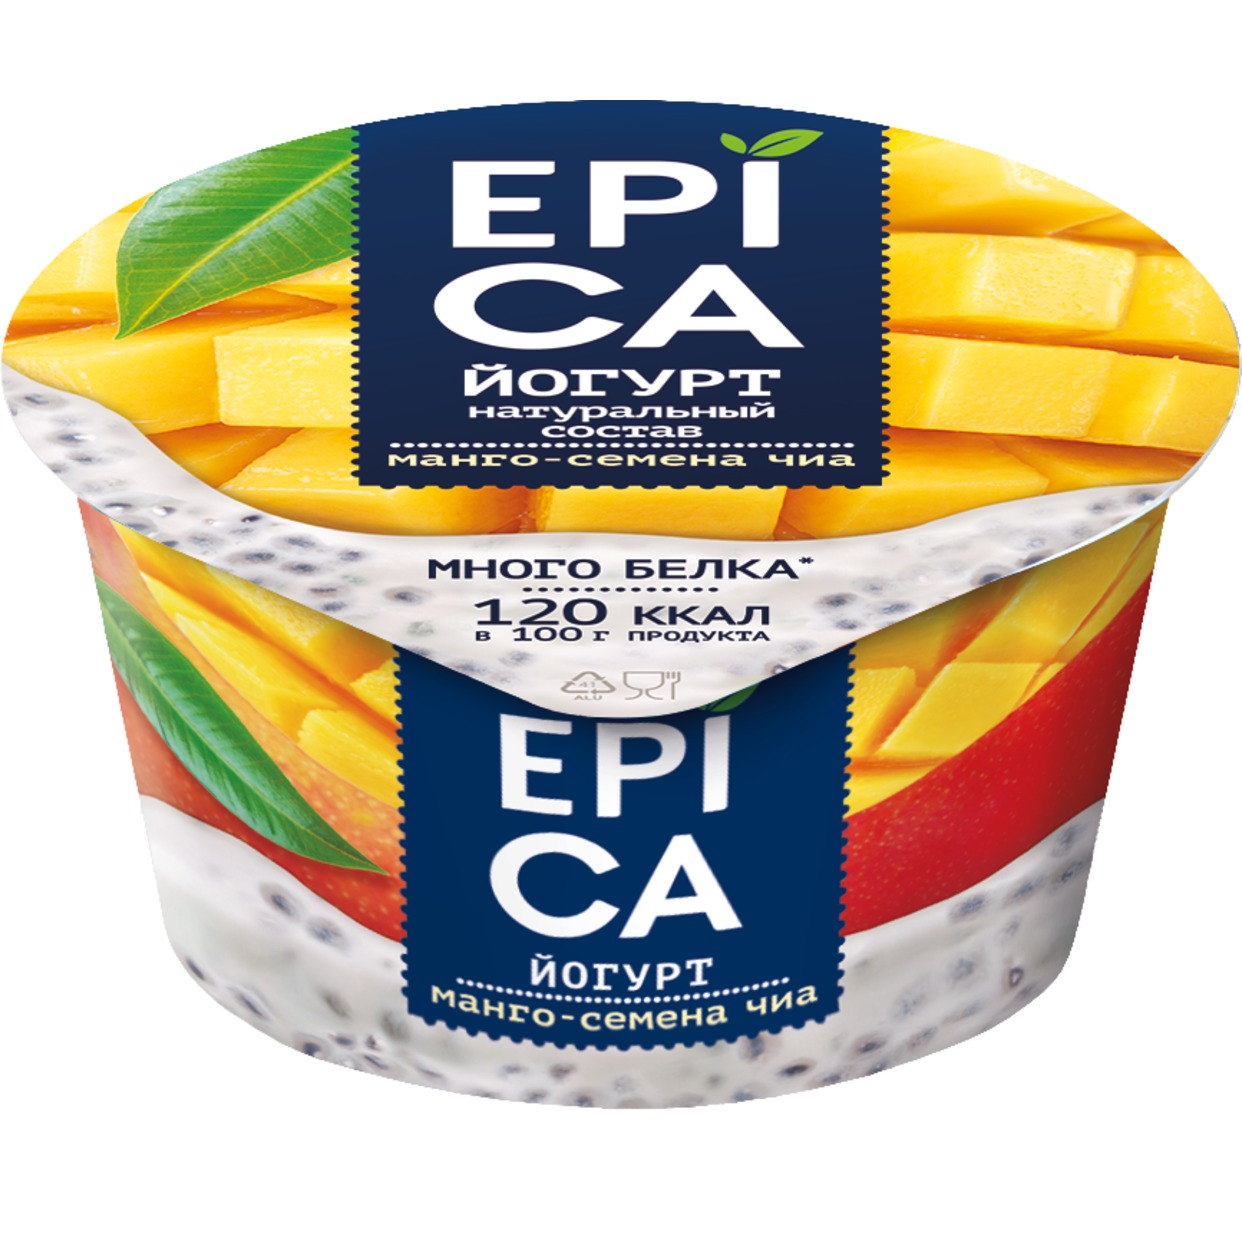 Йогурт Epica, манго-семена чиа, 130 г по акции в Пятерочке